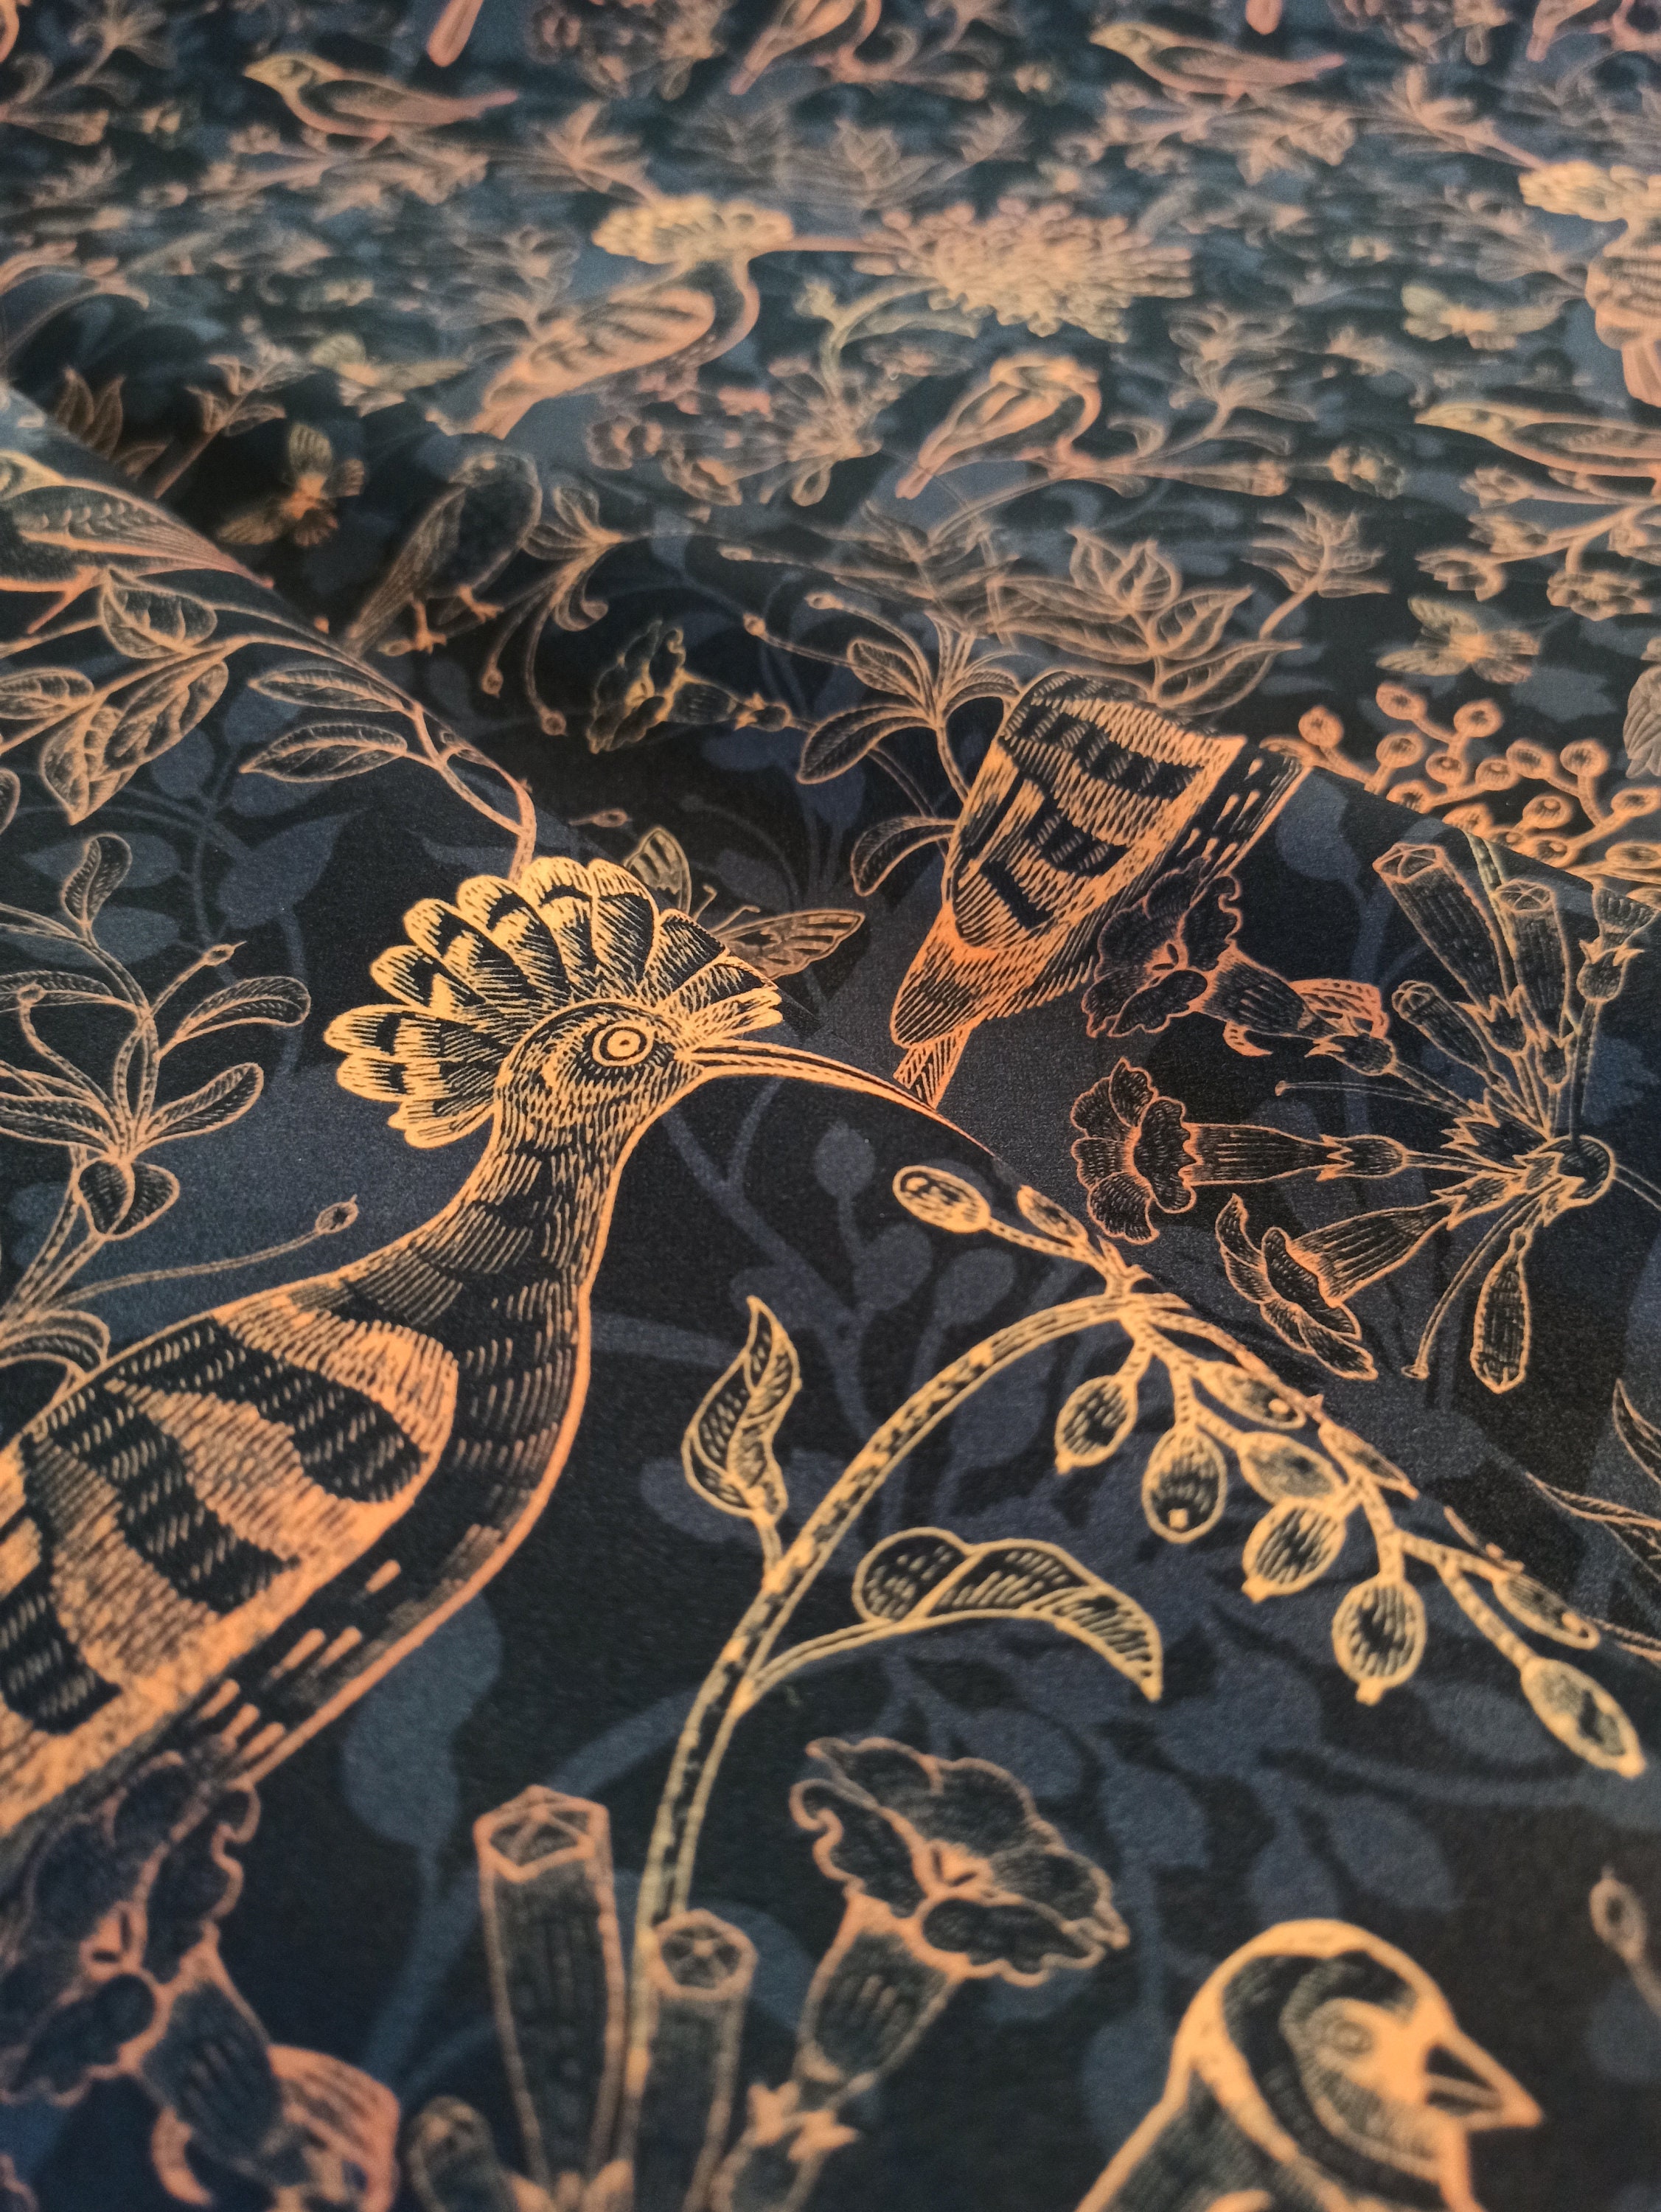 Printed Velvet Upholstery Fabric 355g/m2 Exotic Birds -